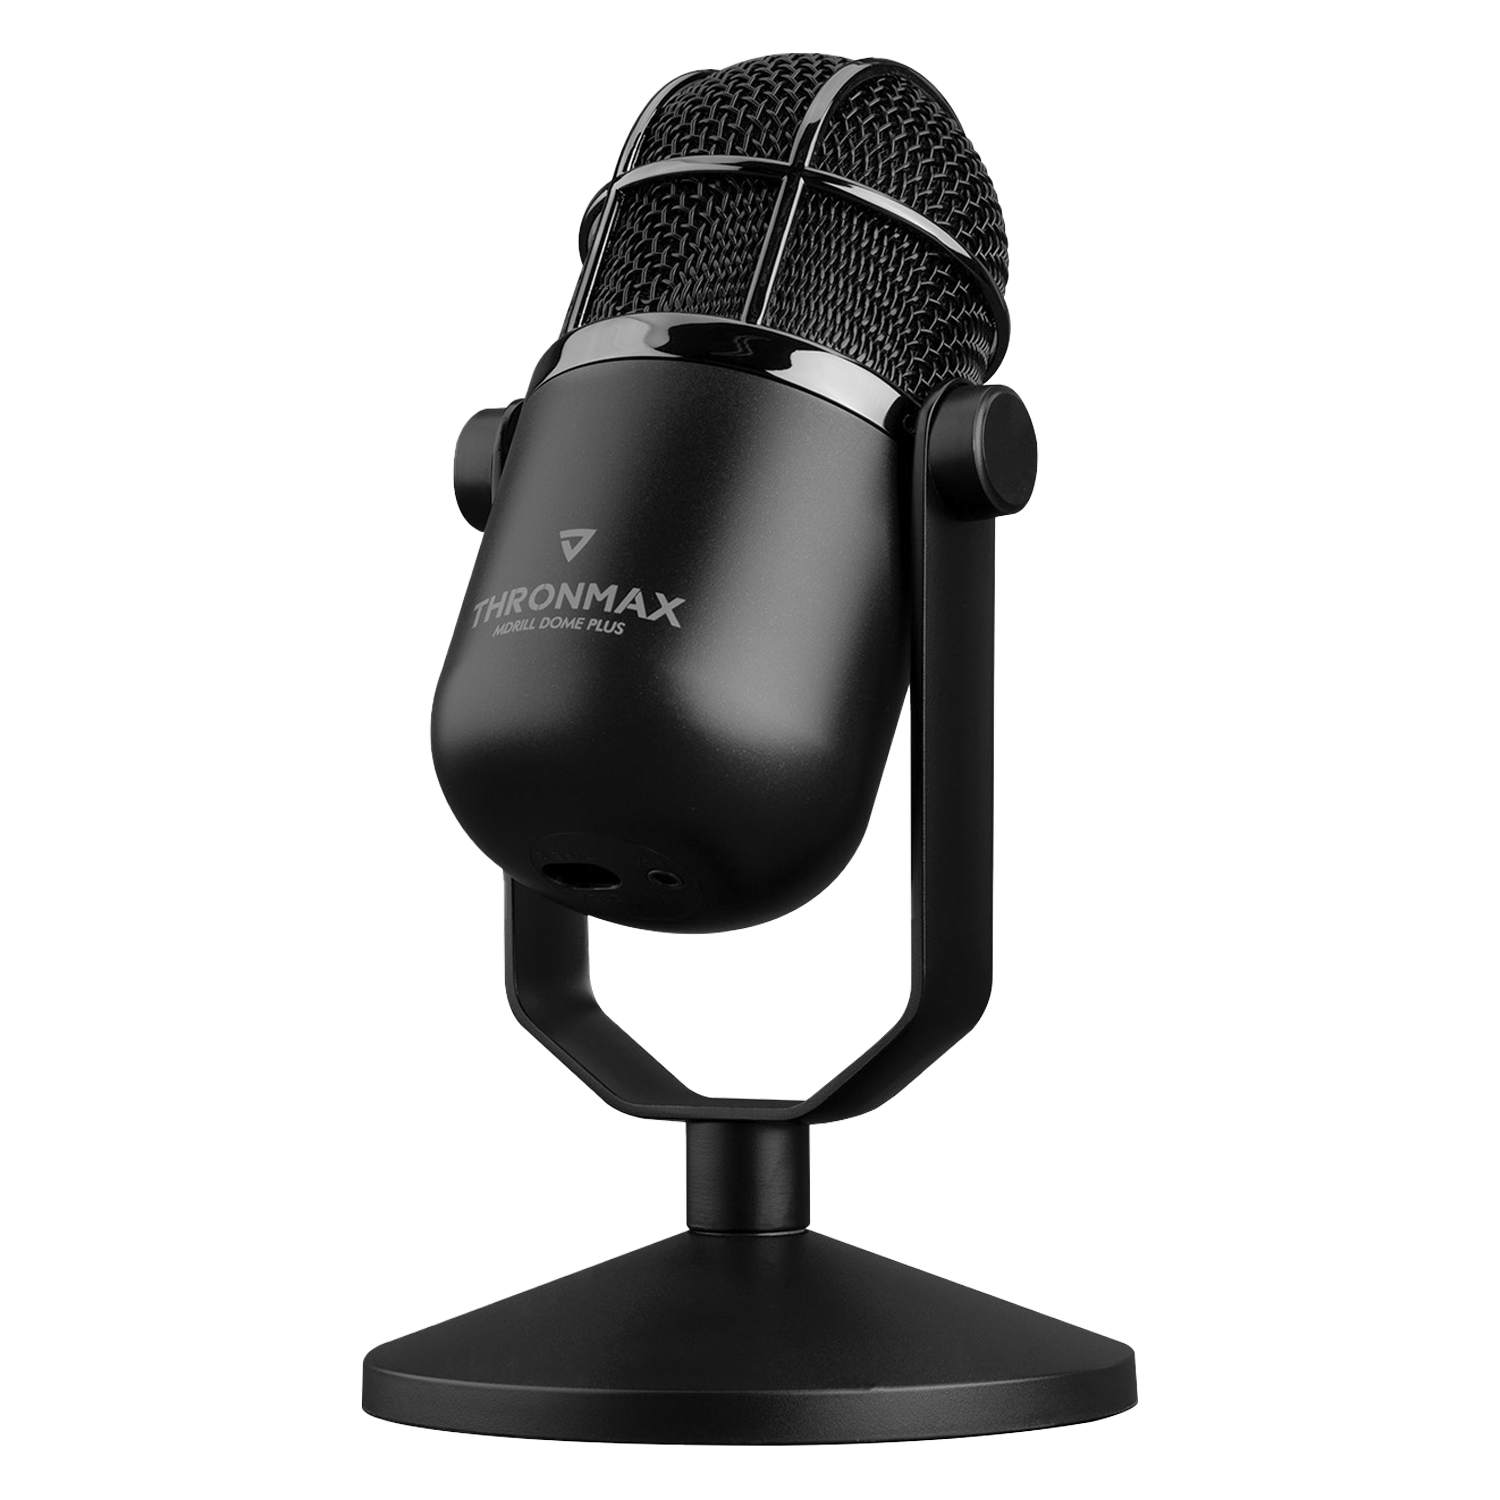 Microfone Thronmax Mdrill Dome Plus M3 96KHZ 24BIT - Preto